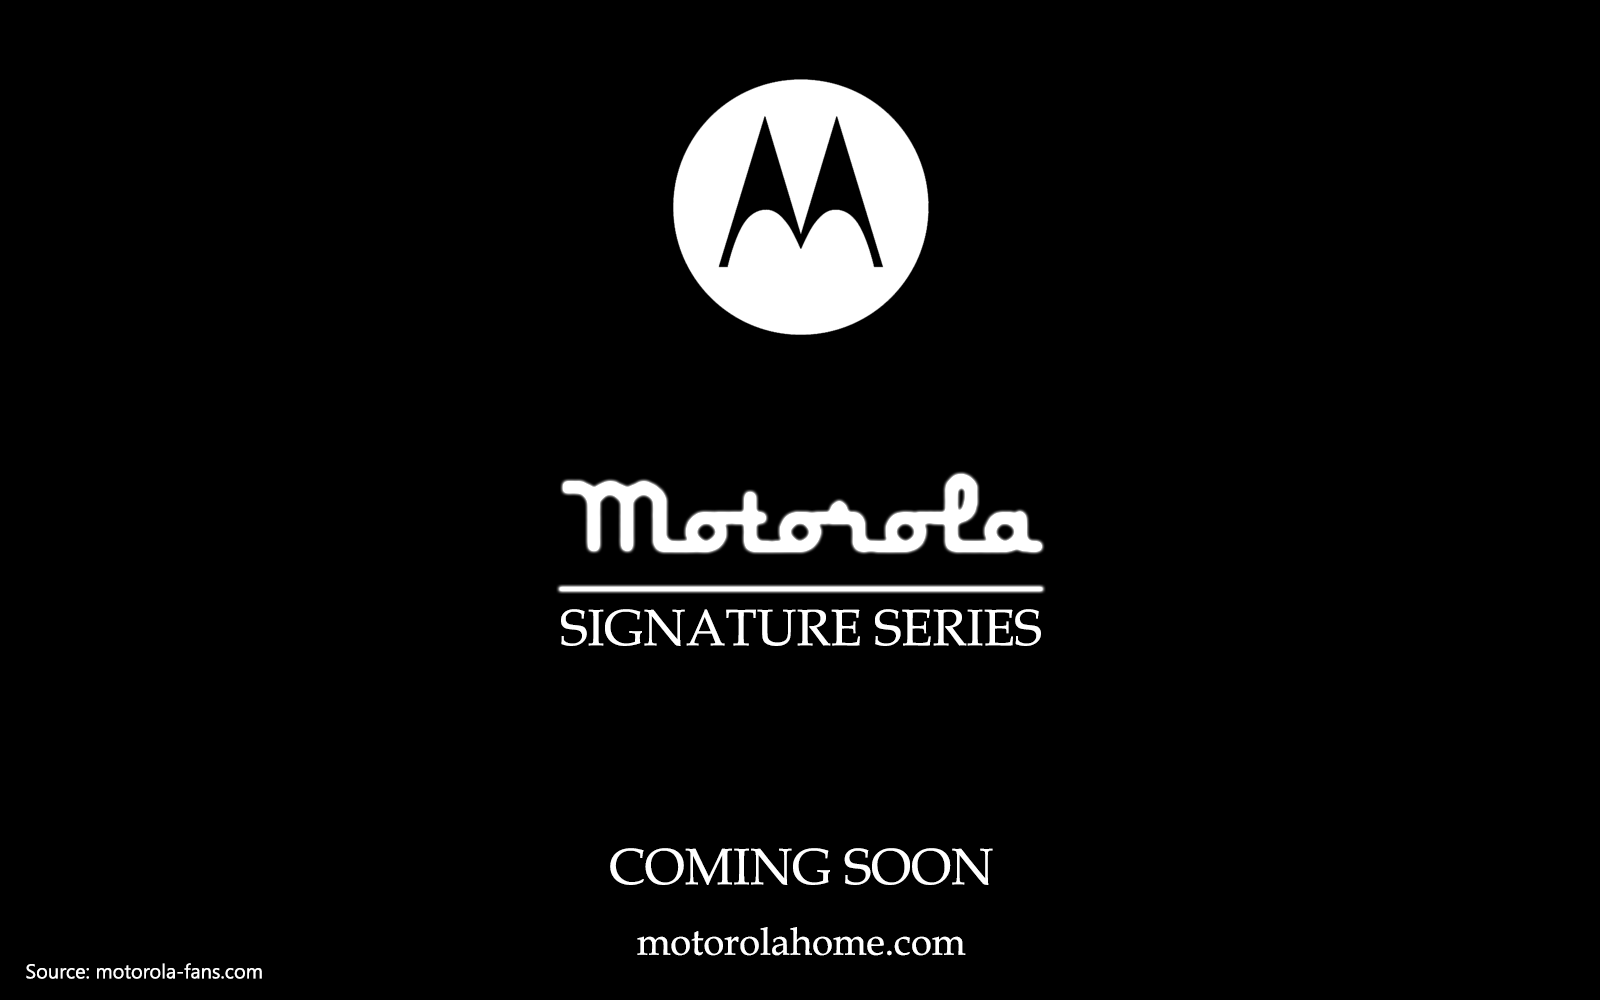 Motorola Home Logo - Motorola Signature Series to be shown at MWC 2017 - Motorola Lovers